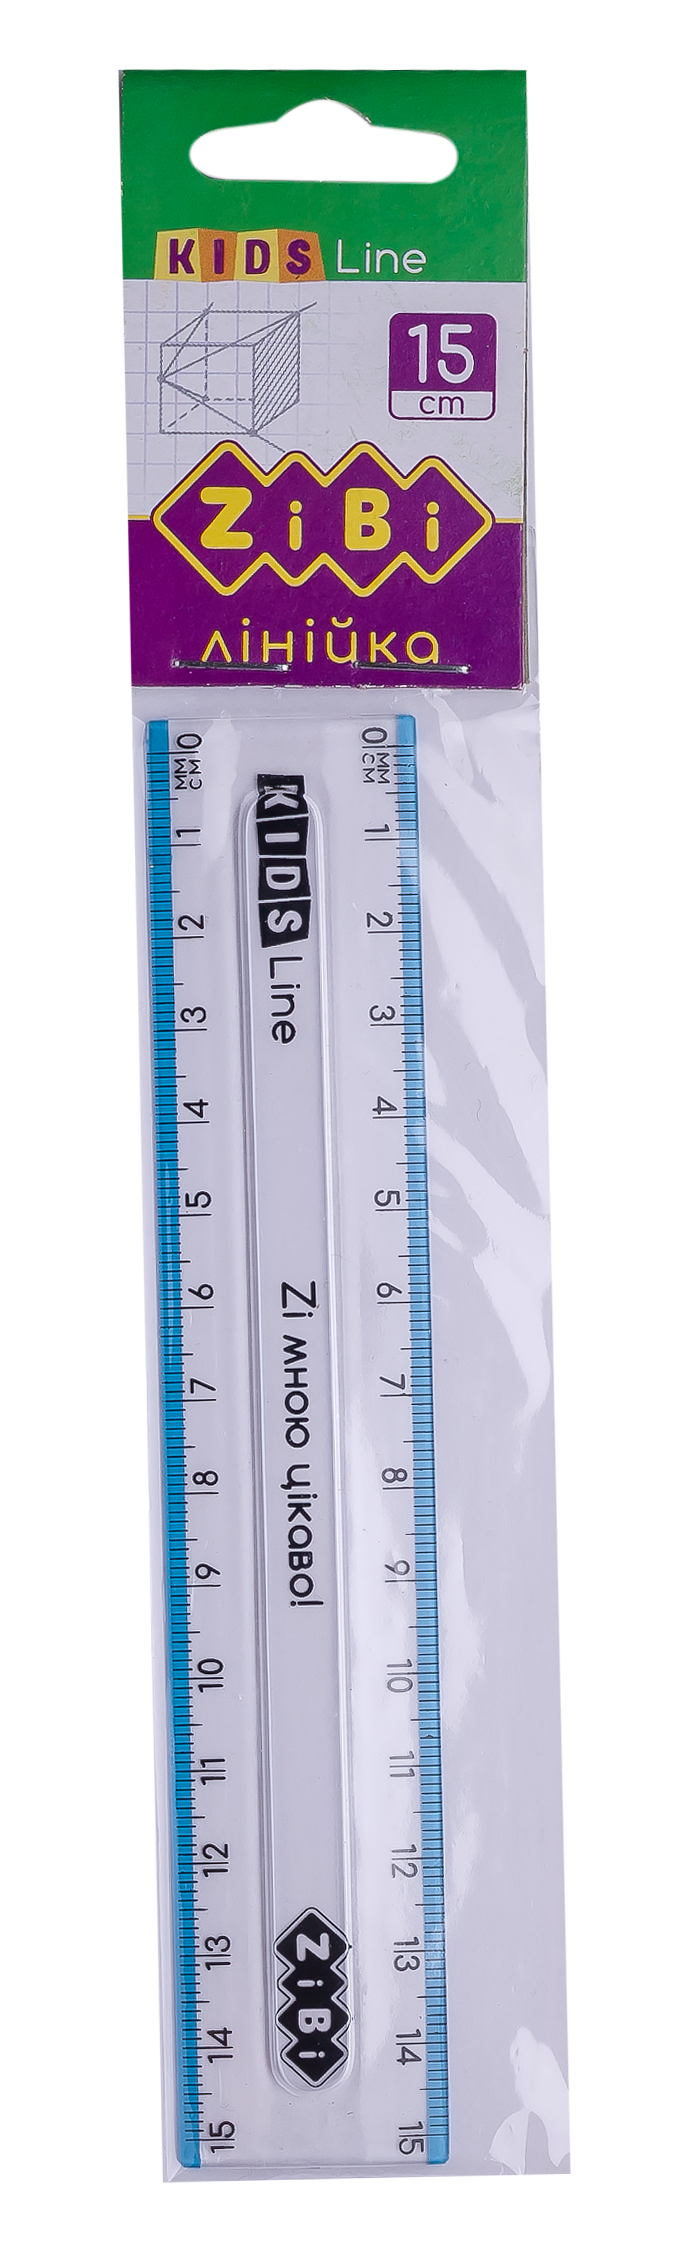 Линейка пластиковая 15 см ZiBi KIDS Line, с голубой полоской - №1